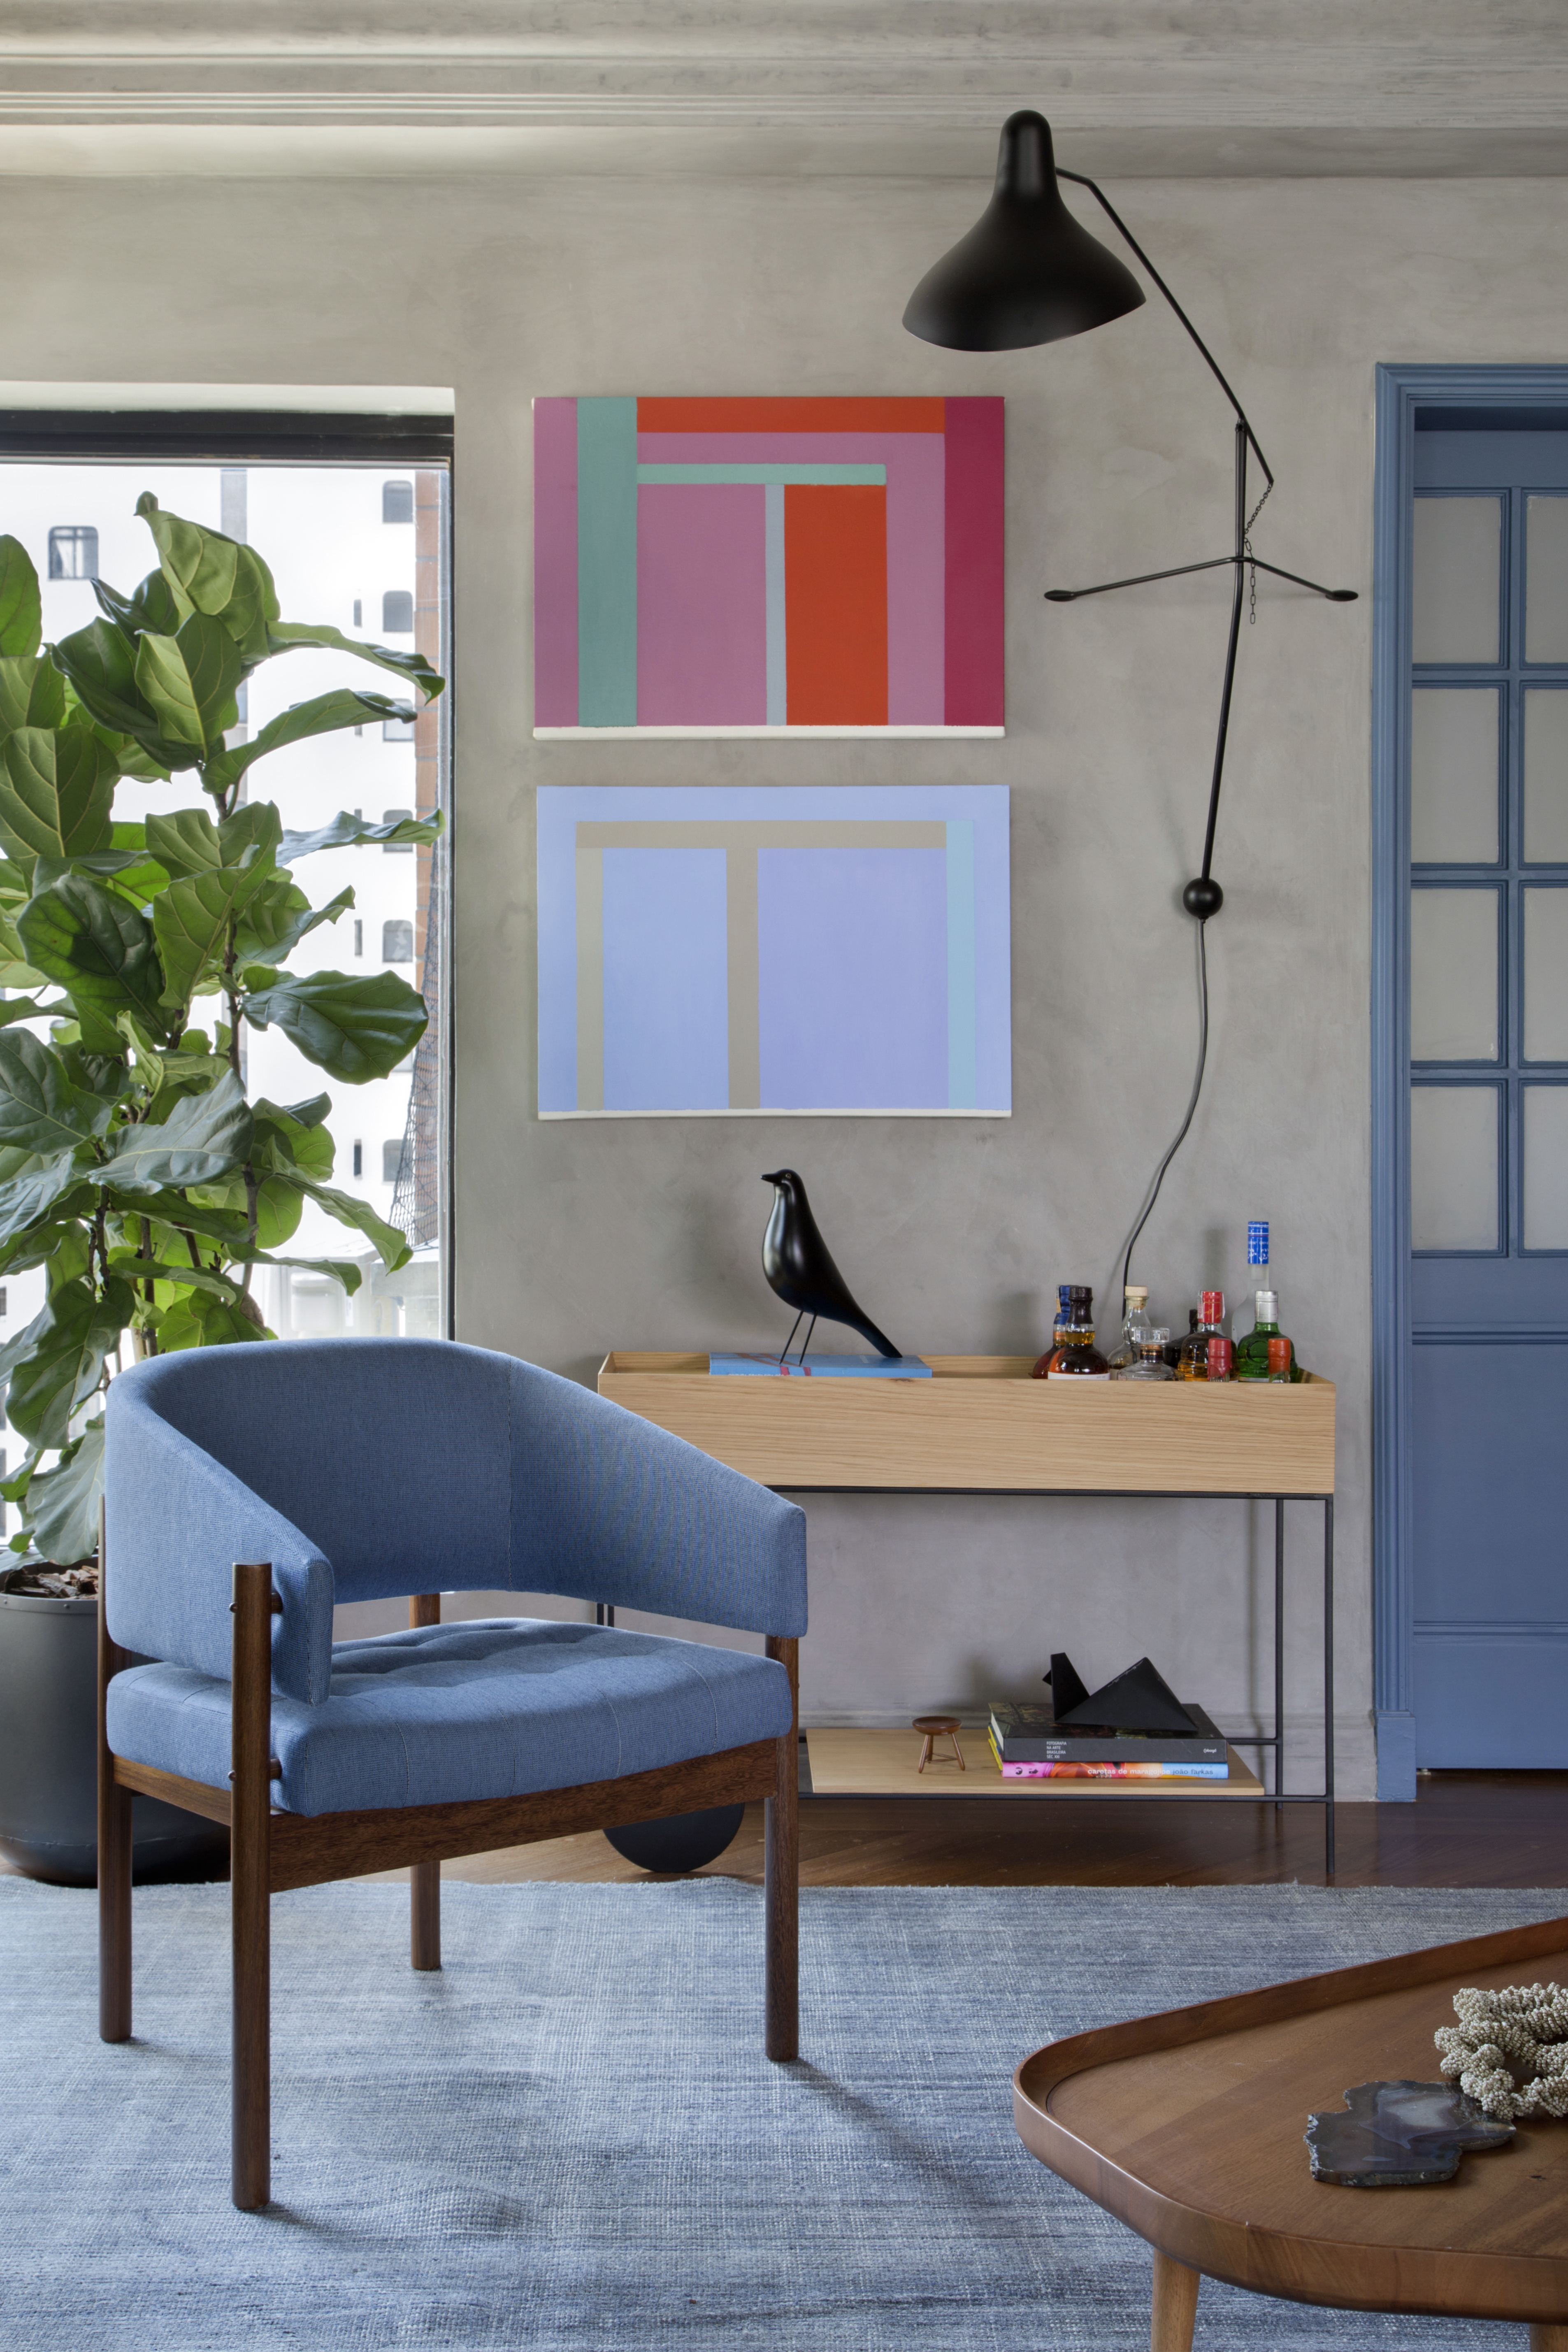 Quadros e cores dão personalidade e charme à apê reformado em 60 dias. Projeto de Ar.Kitekt Associados. Na foto, sala de estar, planta ficus, poltrona azul, carrinho de chá, parede de cimento, quadros.